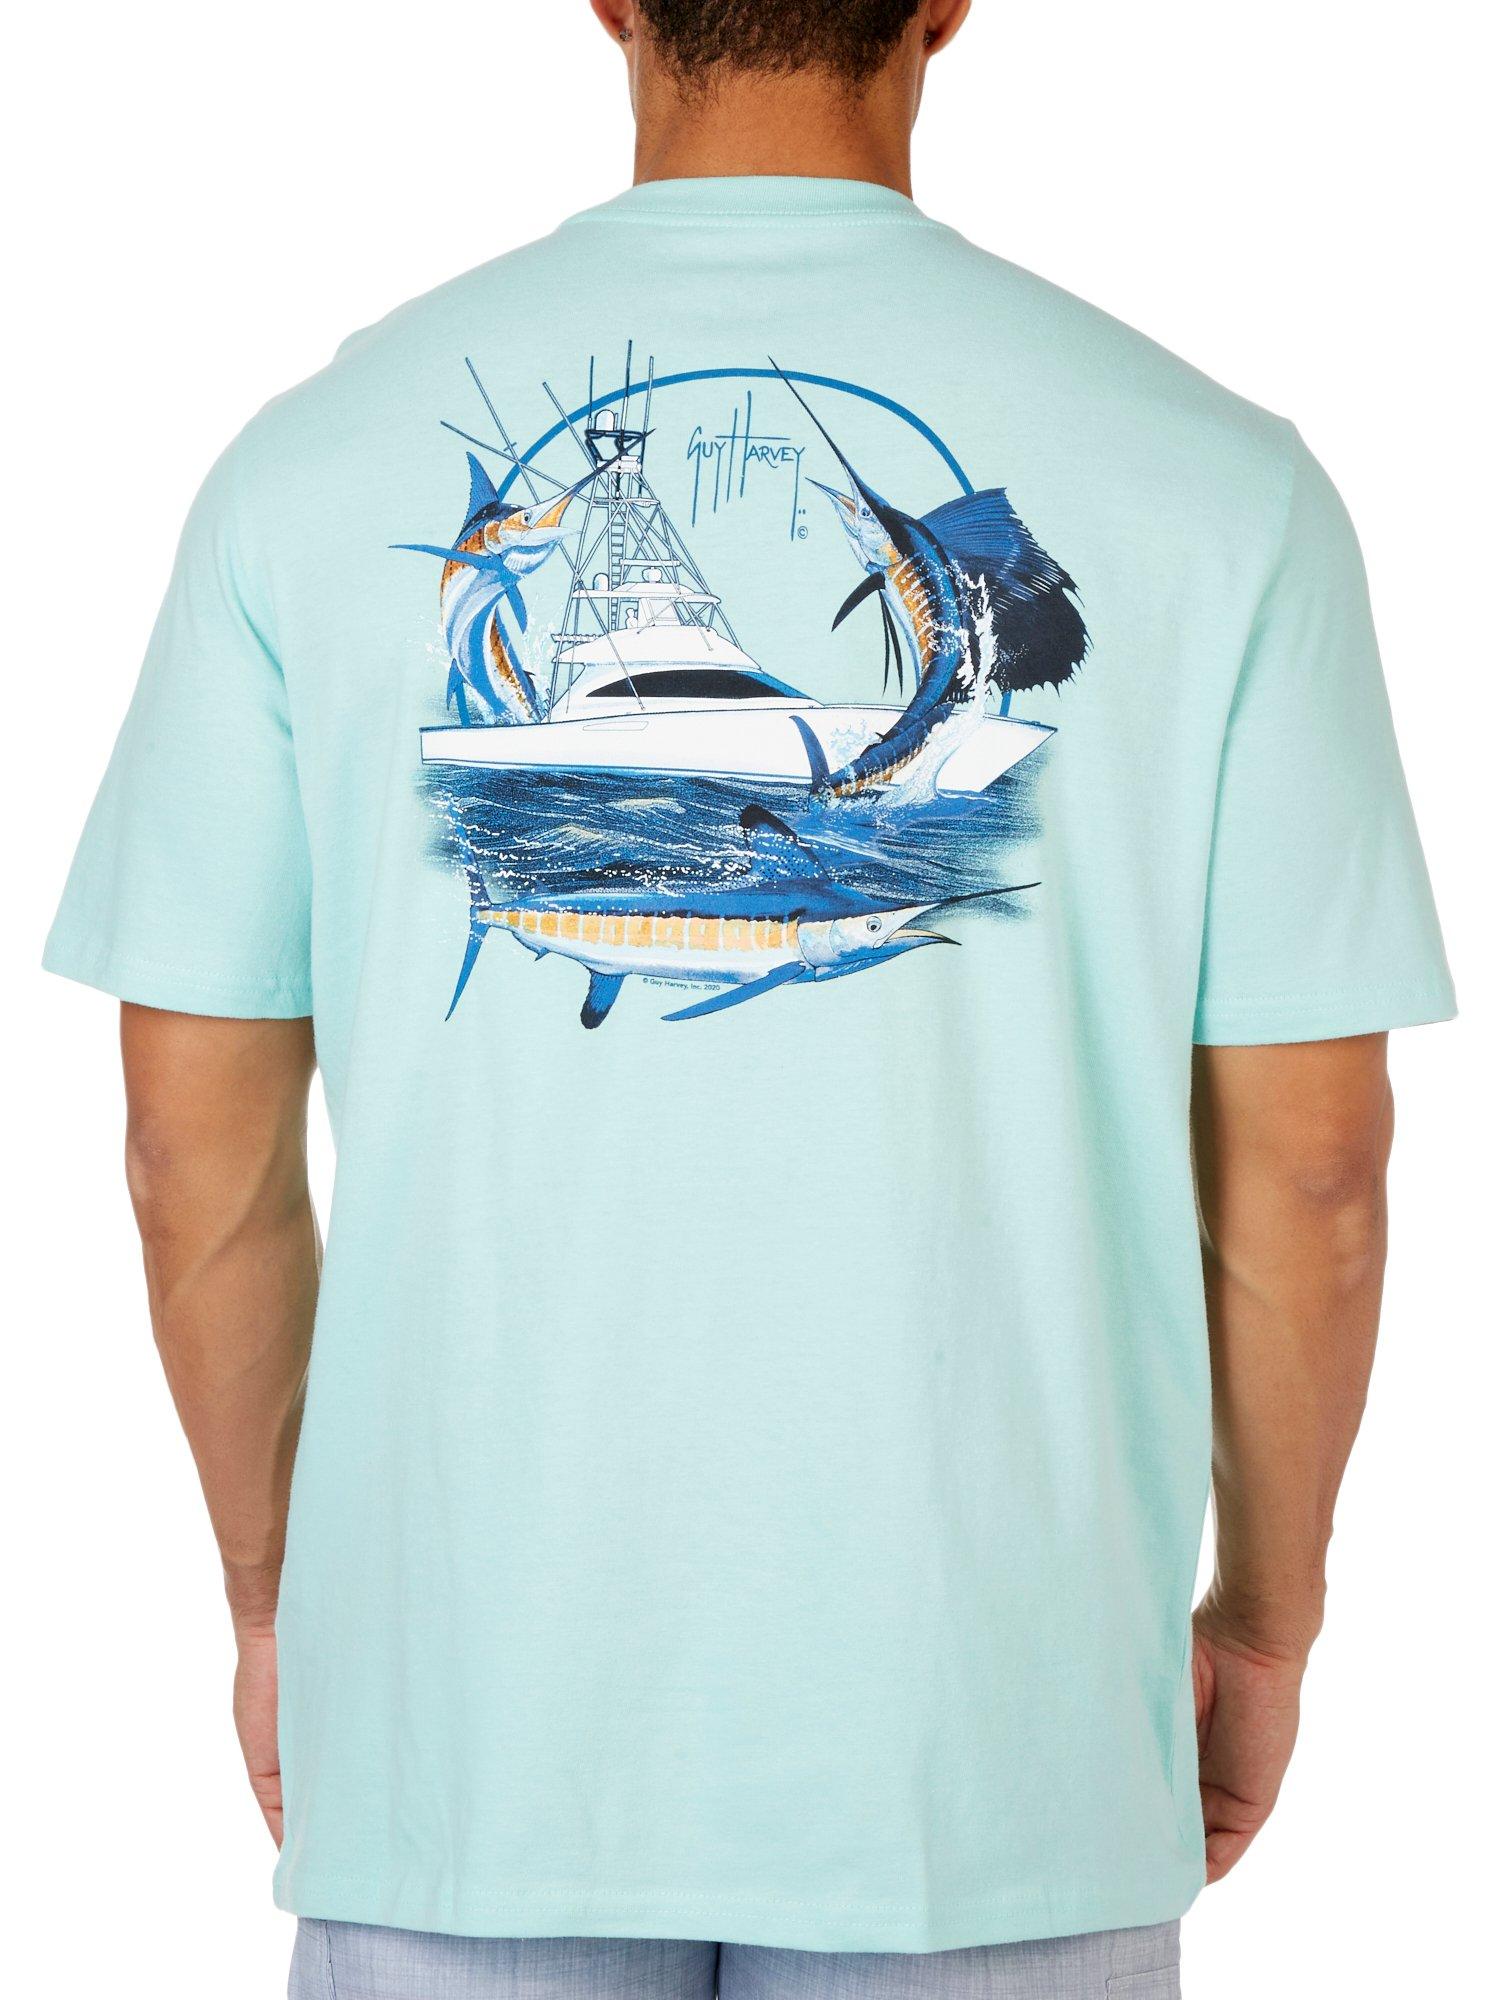 Mens Marlin/Sail Graphic Short Sleeve T-Shirt